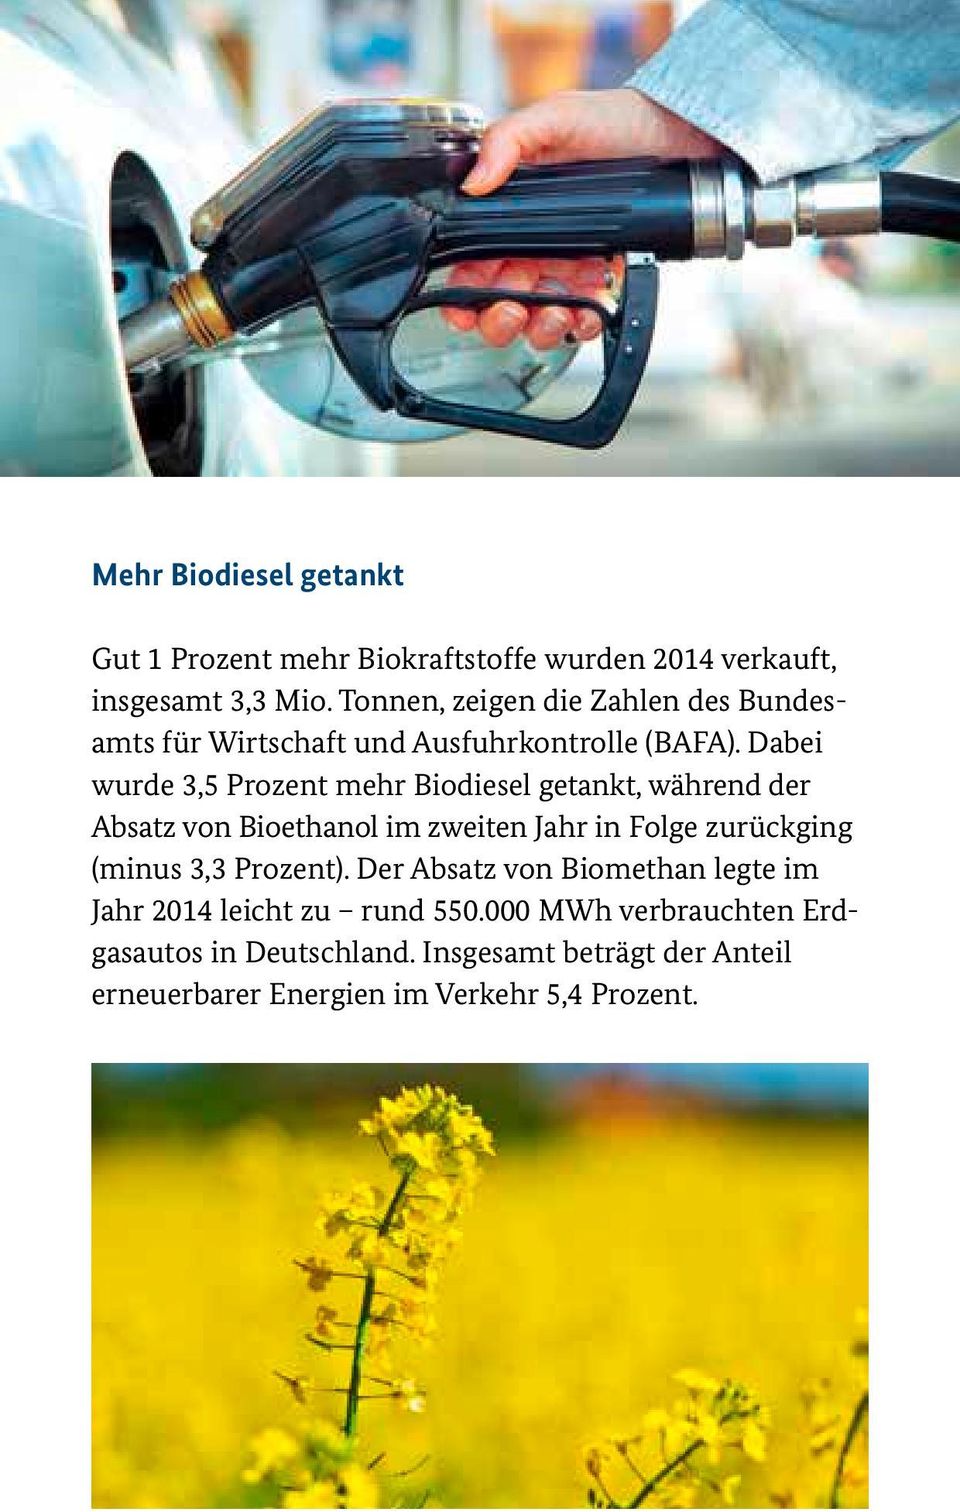 Dabei wurde 3,5 Prozent mehr Biodiesel getankt, während der Absatz von Bioethanol im zweiten Jahr in Folge zurückging (minus